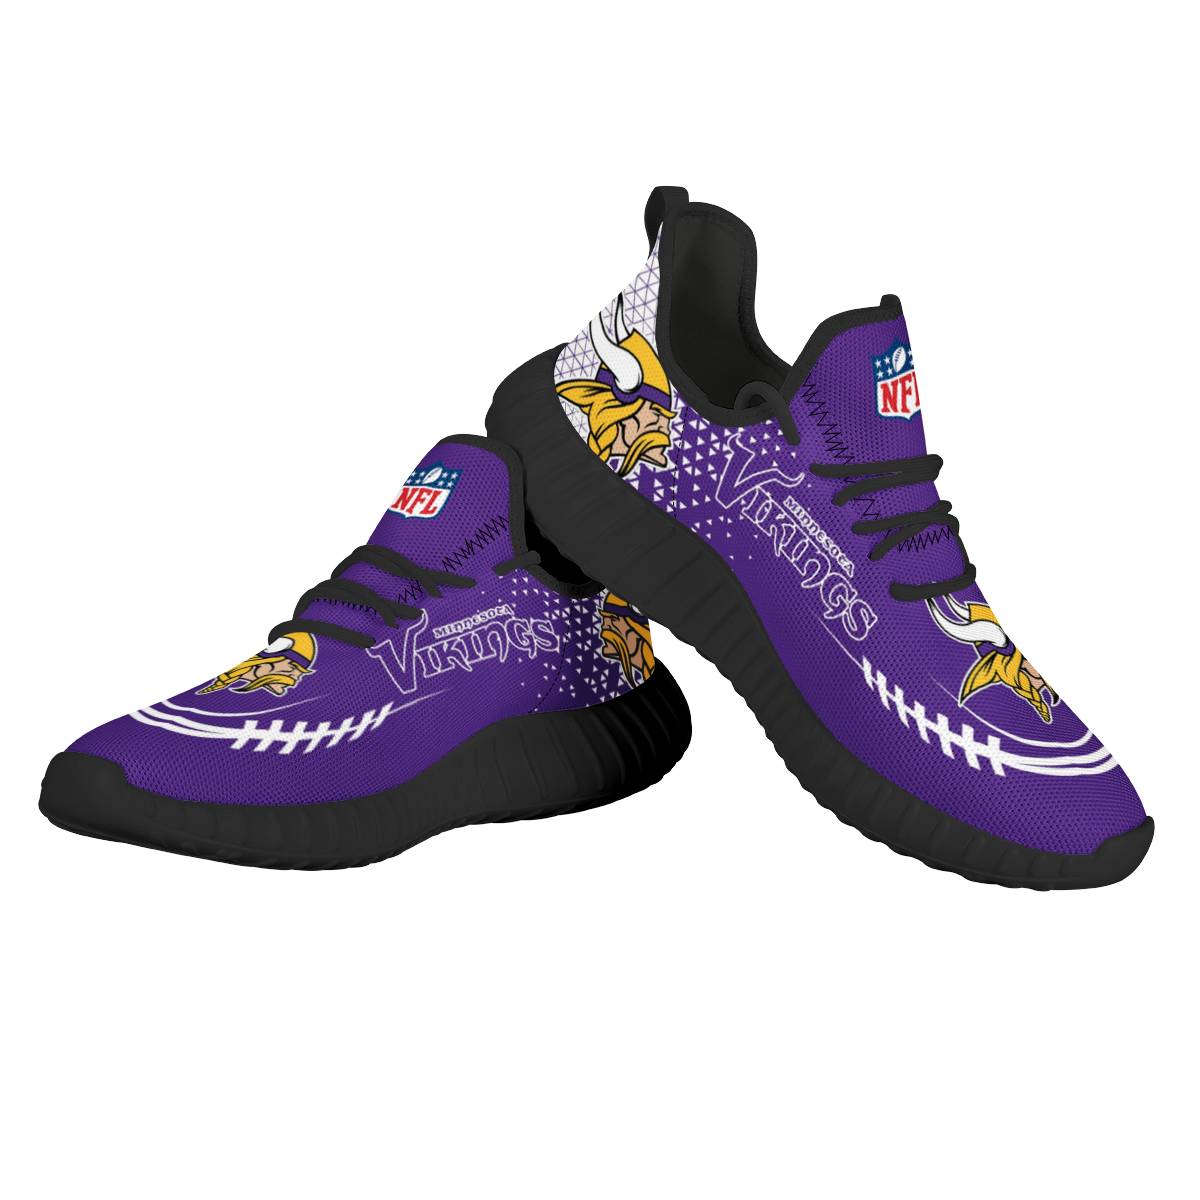 Men's NFL Minnesota Vikings Mesh Knit Sneakers/Shoes 004